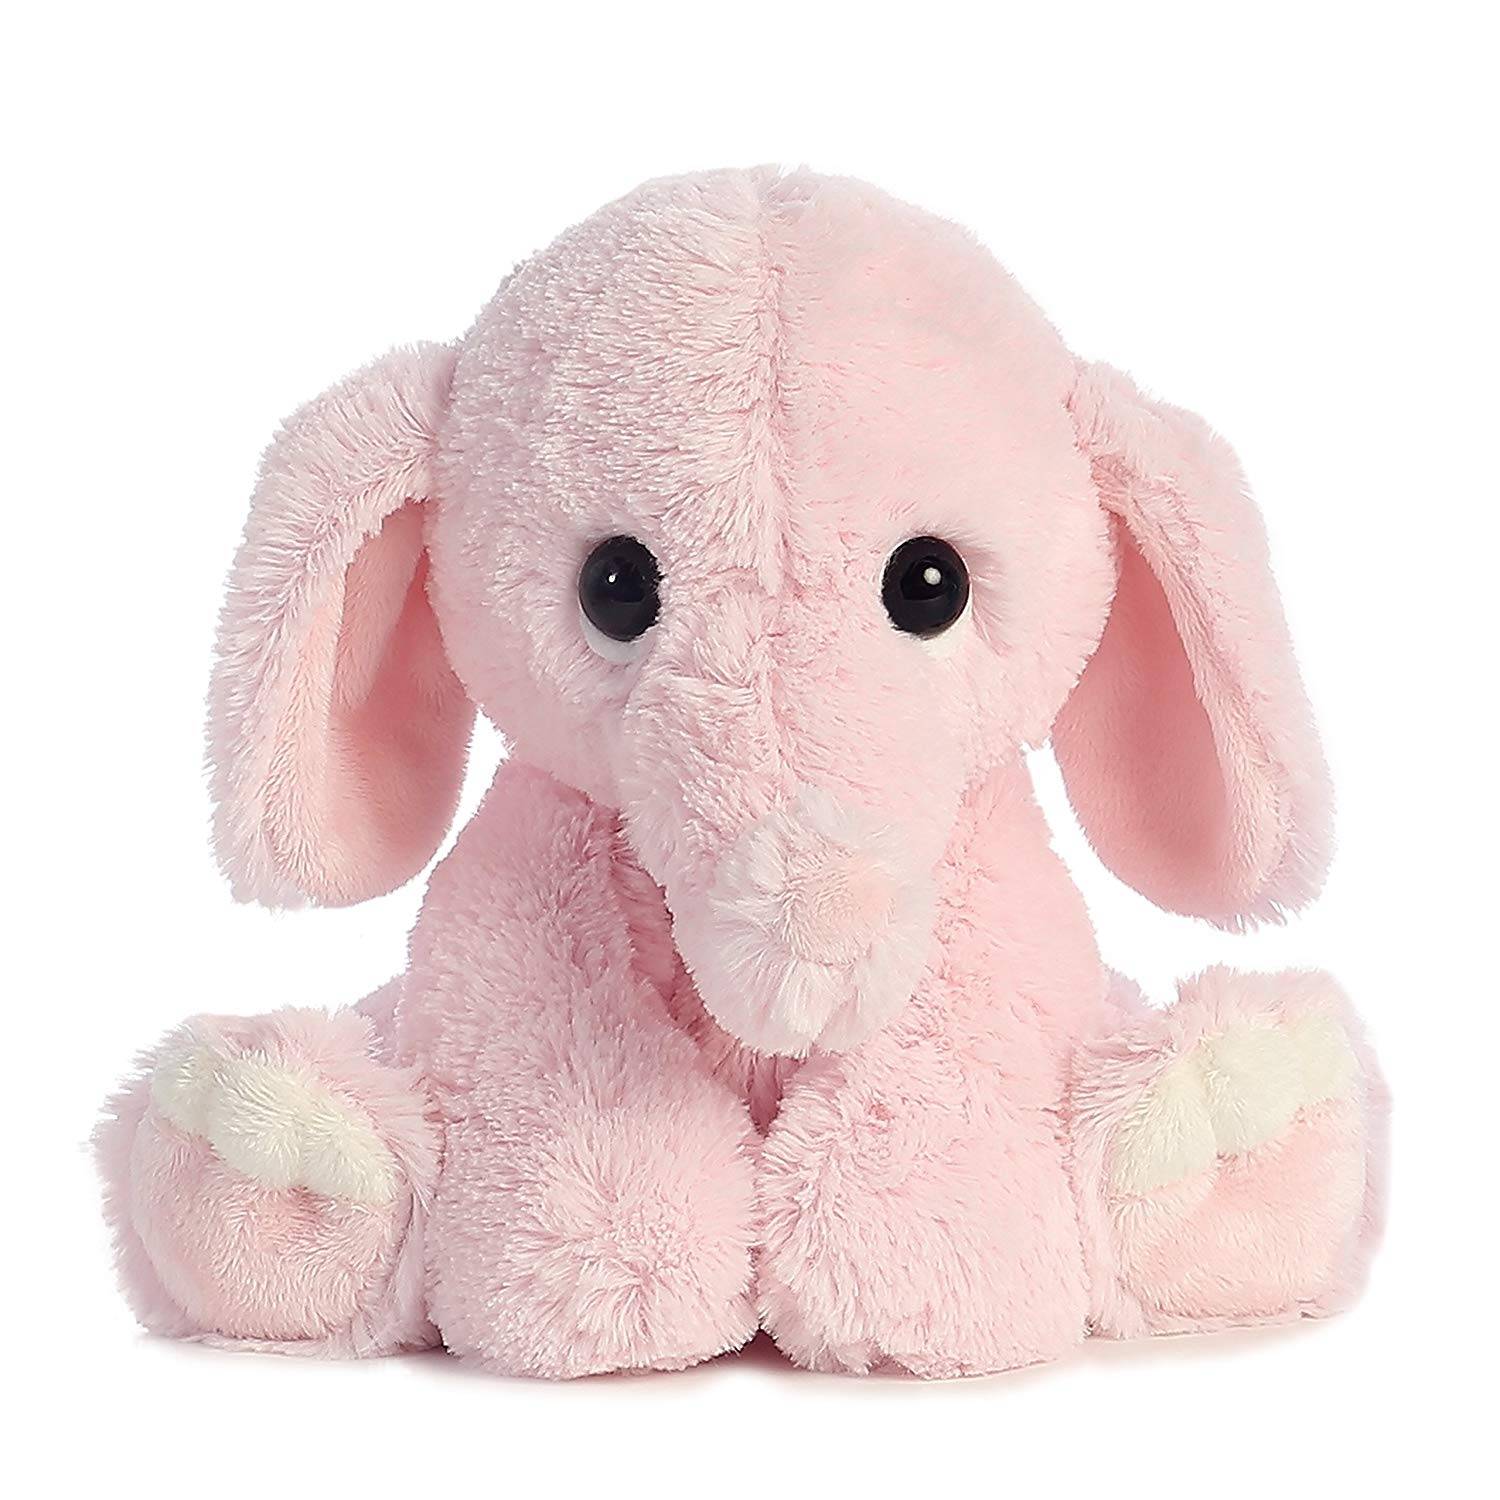 lovely pink velboa long pile large plush stuffed soft elephant toy for kids